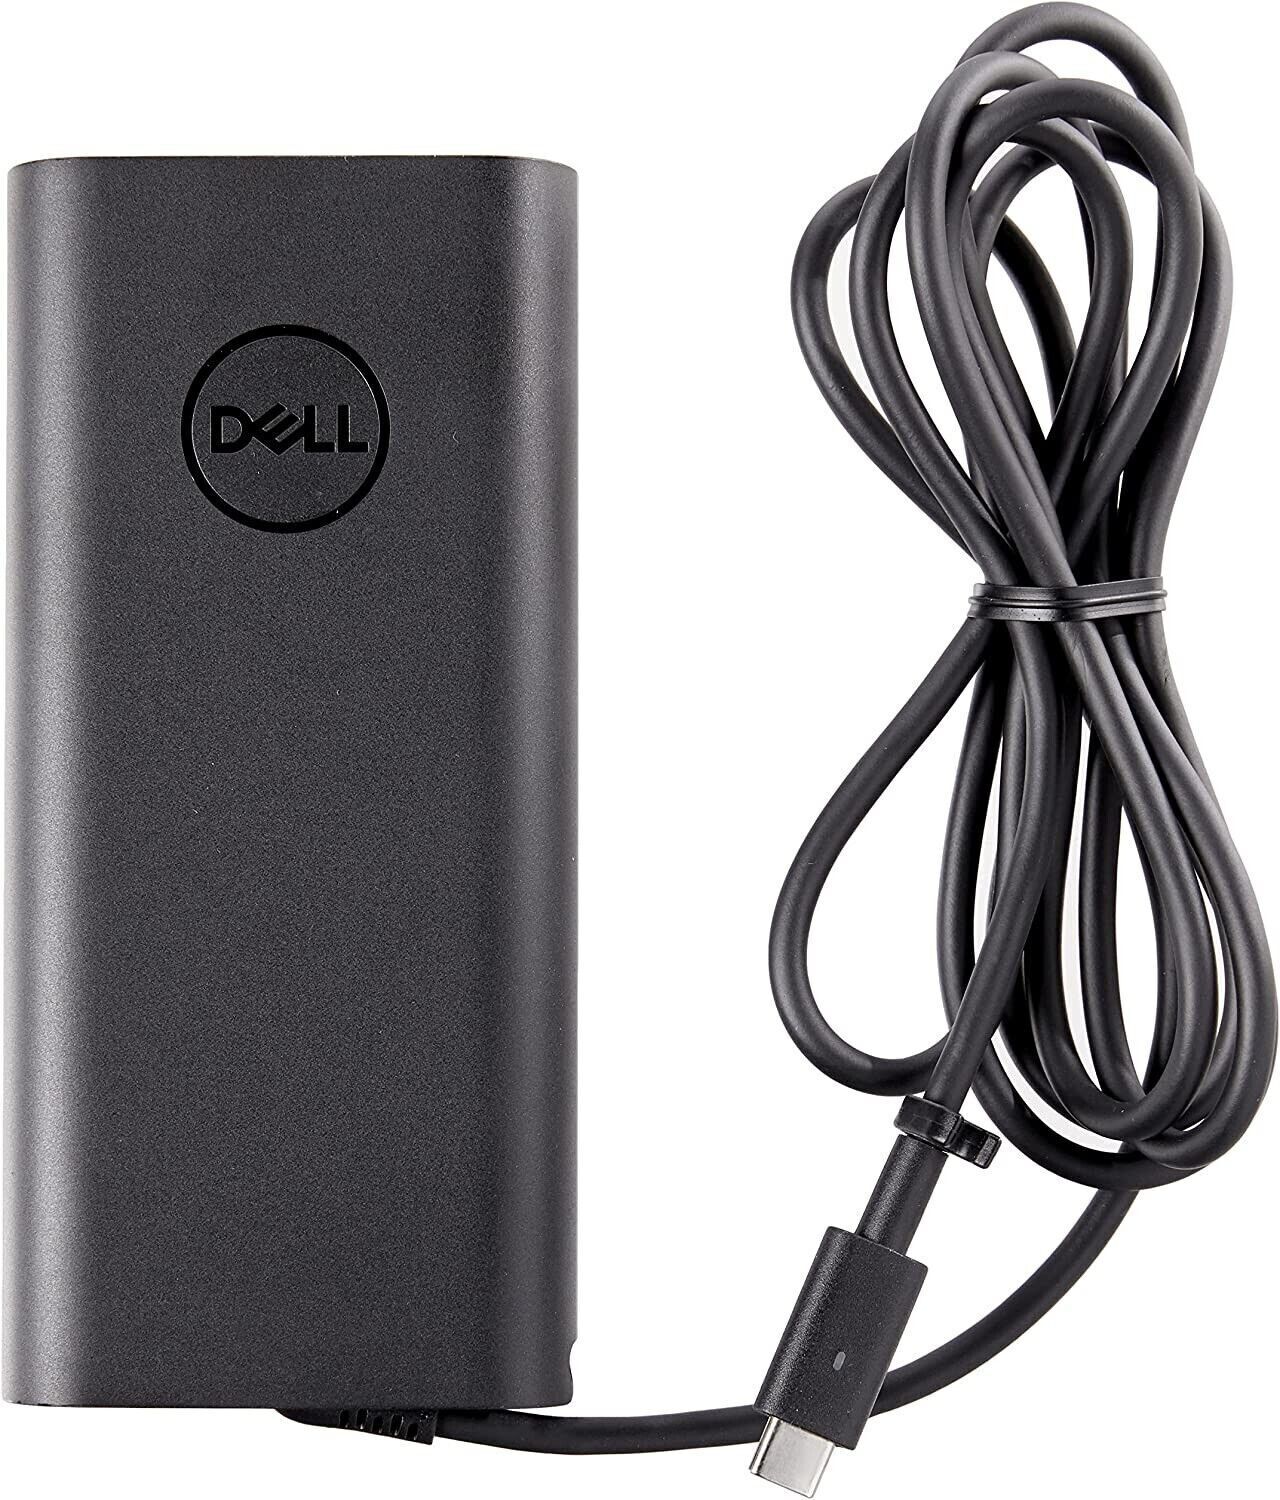 Dell 130W USB-C AC Power Adapter For Dell XPS Dell Precision (HA130PM130)